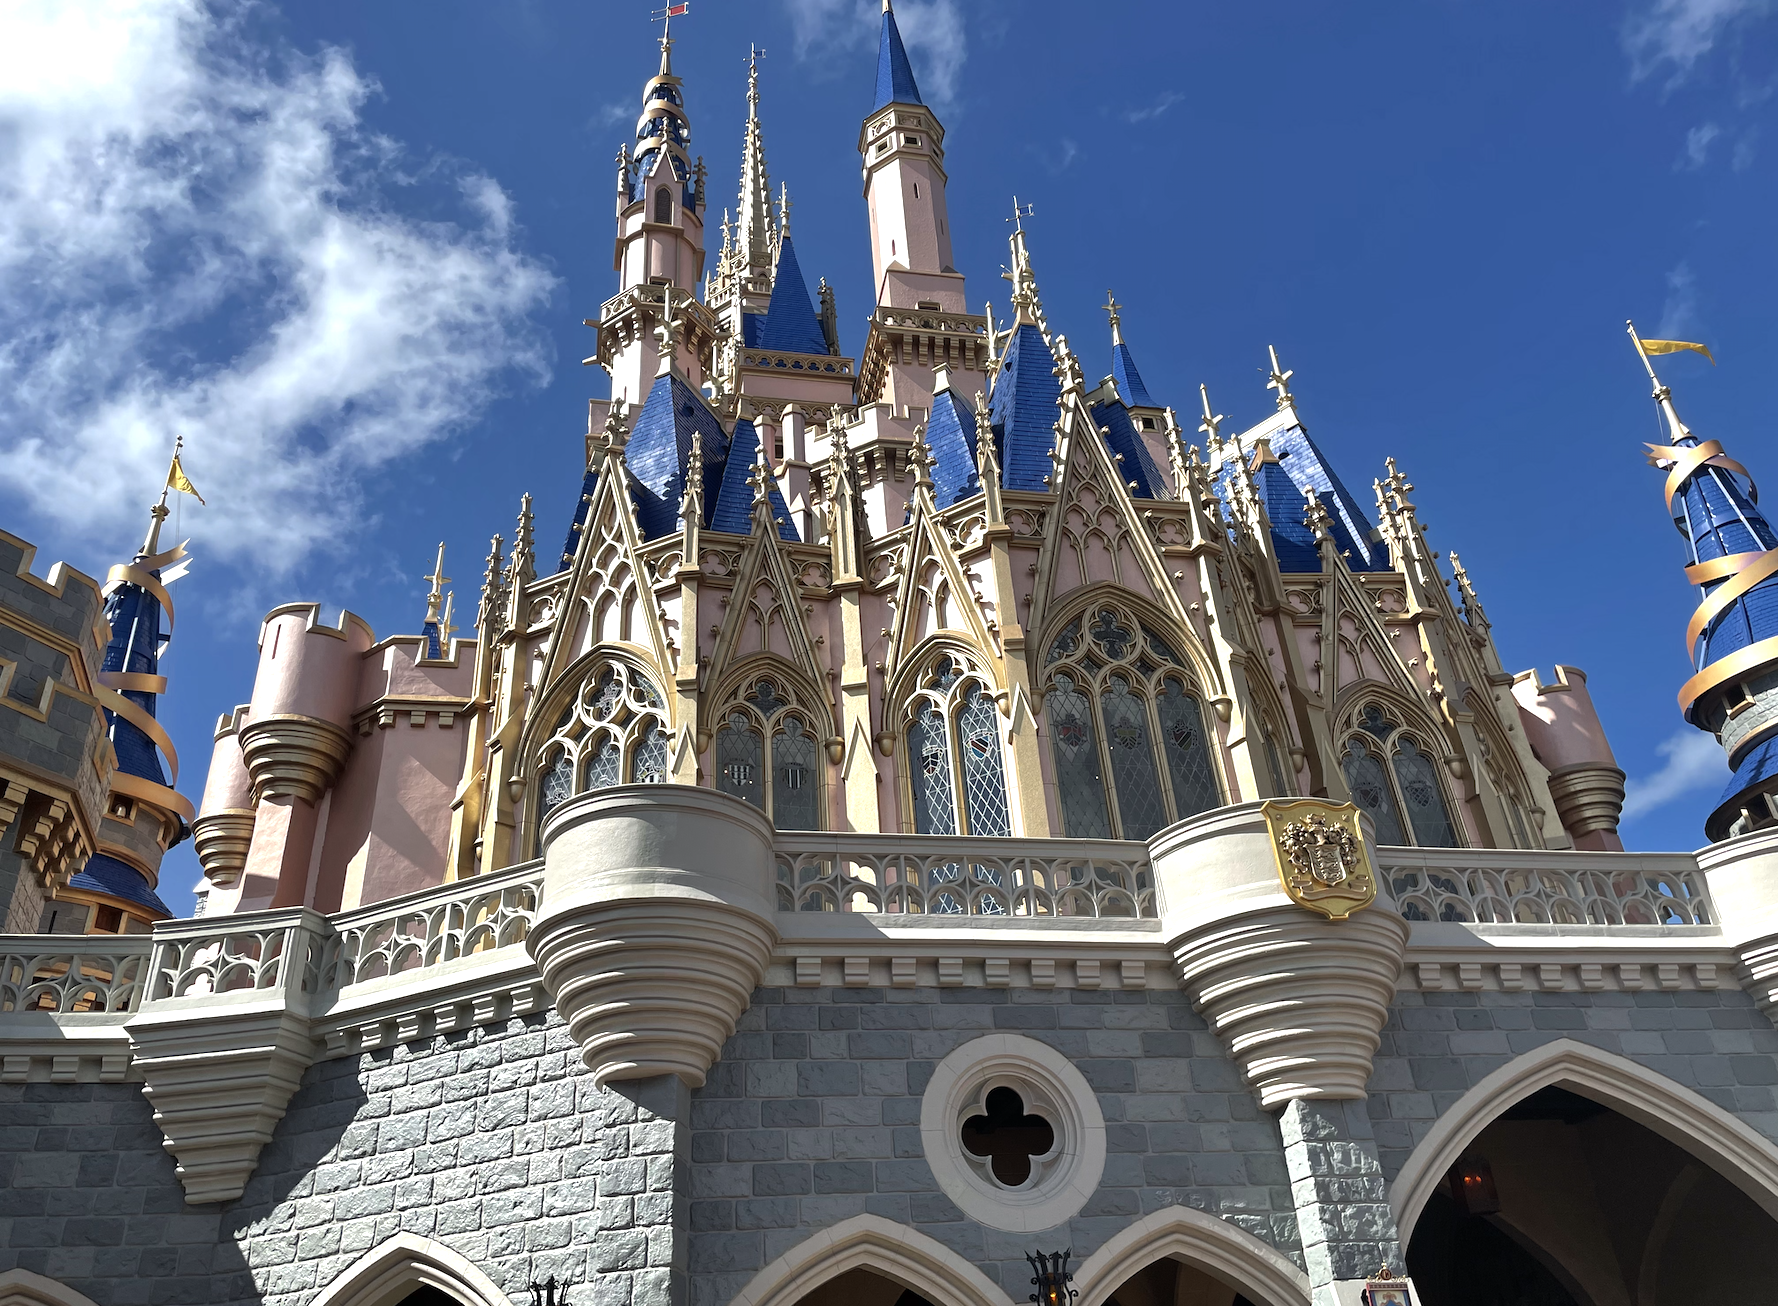 When does Magic Kingdom close- Cinderella's Castle